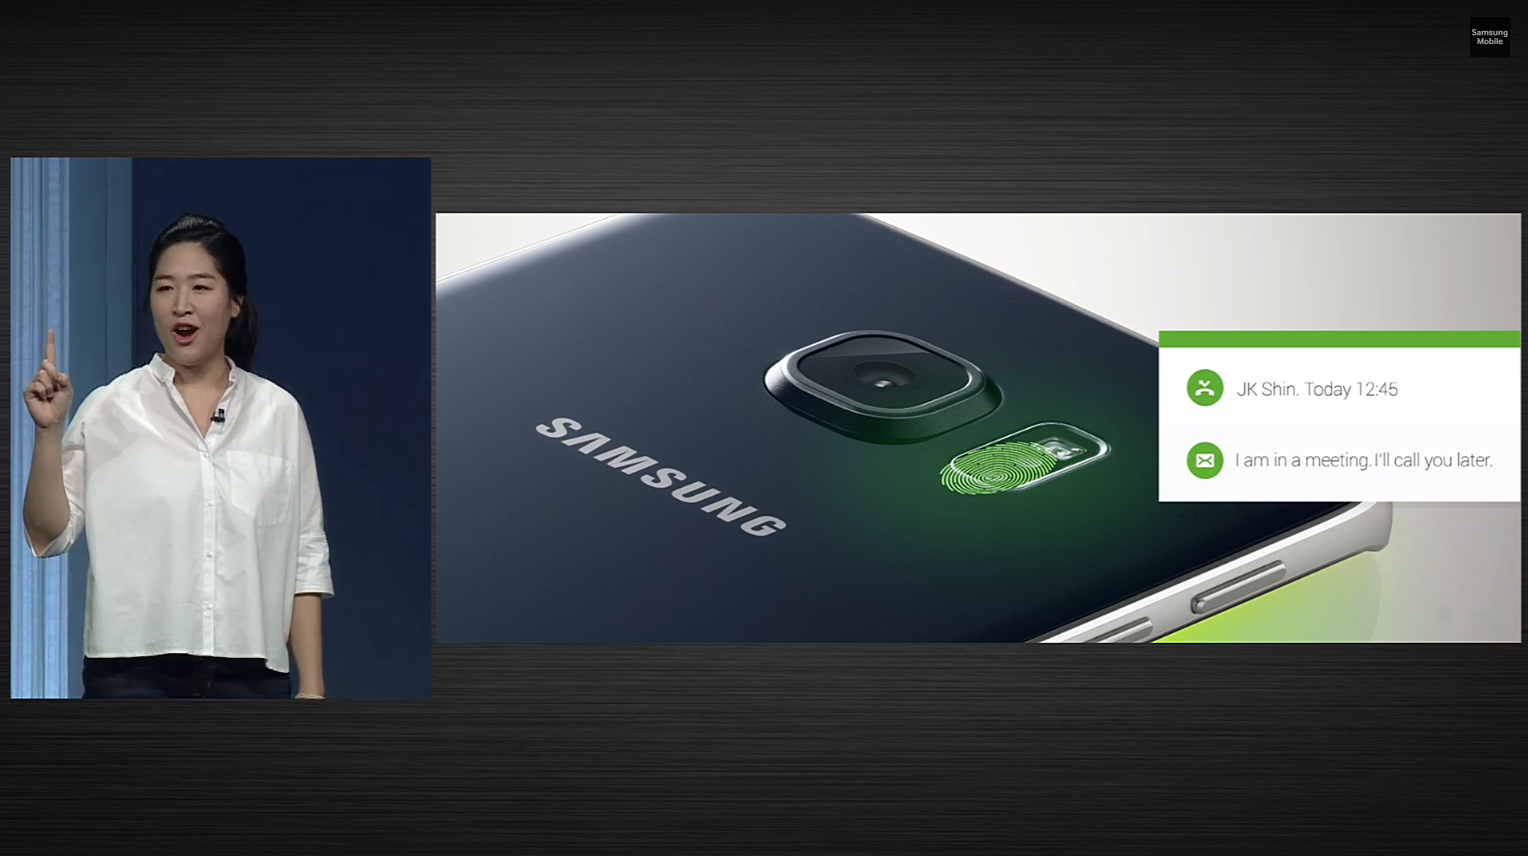 ย้อนความหลัง เทียบสเปค Samsung Galaxy S ตั้งแต่รุ่นแรกยัน S6 ว่าพัฒนาขึ้น (และลง) ยังไงมั่ง